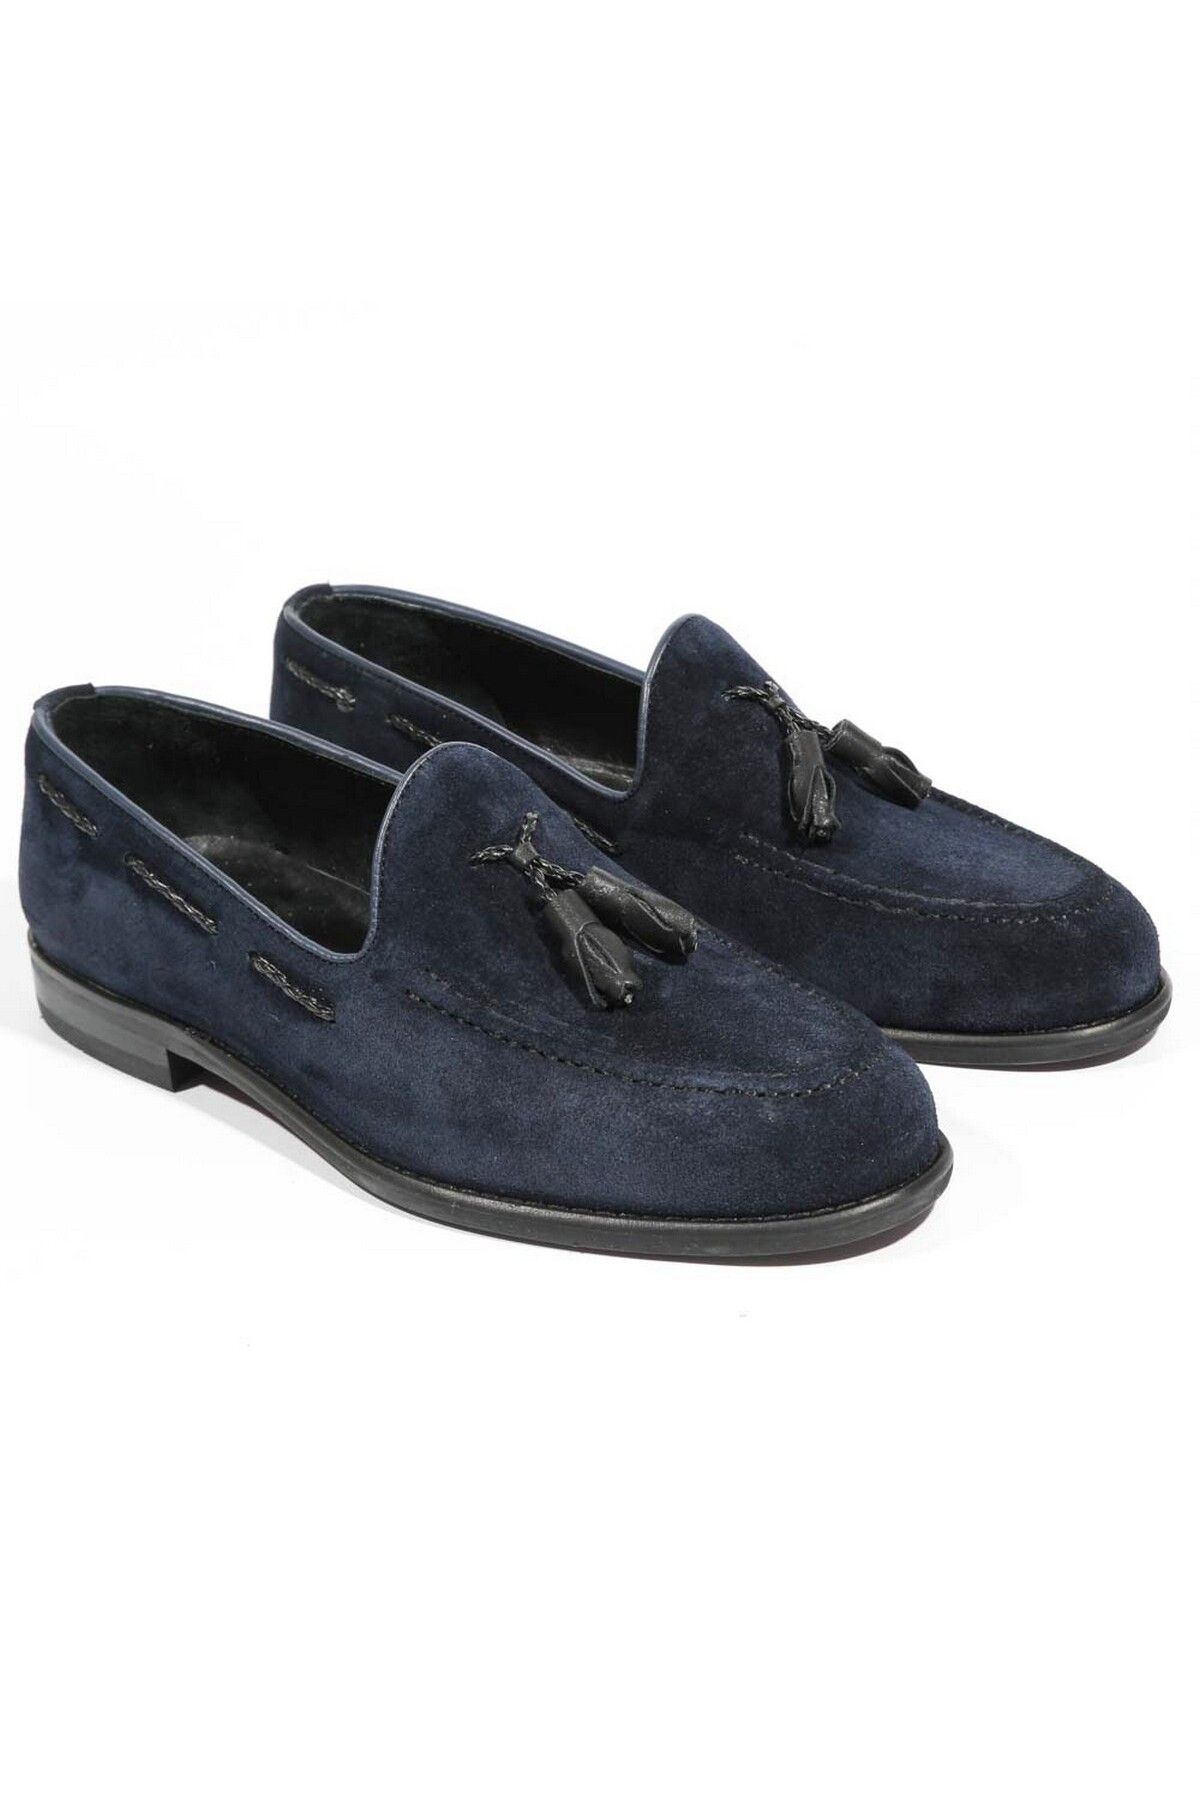 Tetri Gerçek Deri Erkek Lacivert Loafer - Erkek Lacivert Casual Ayakkabı - Antik Model